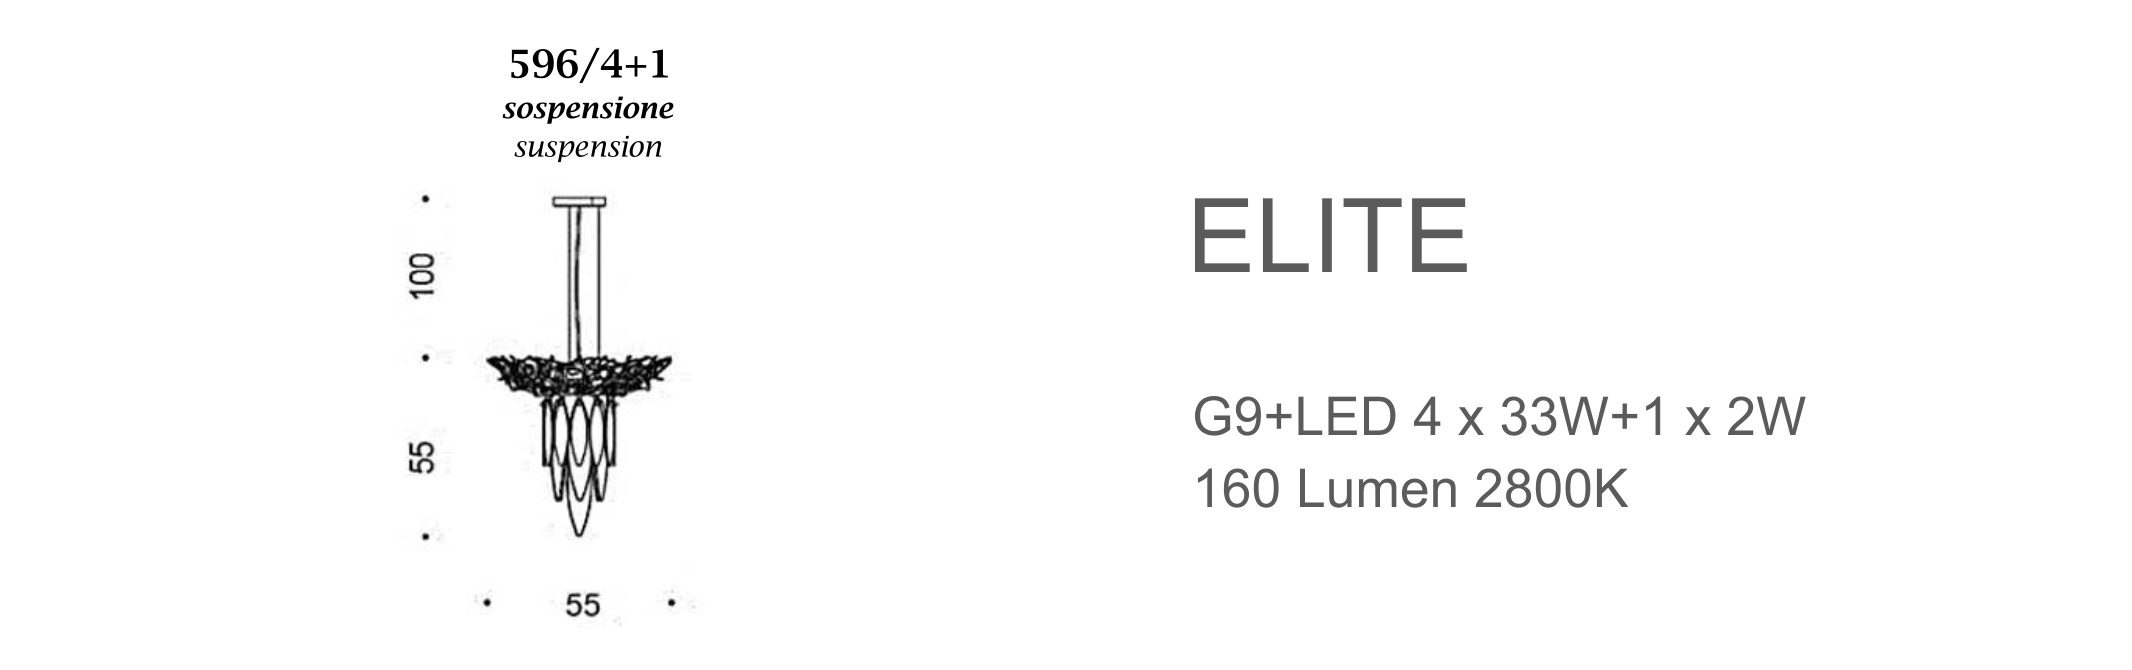 Elite 596/4+1